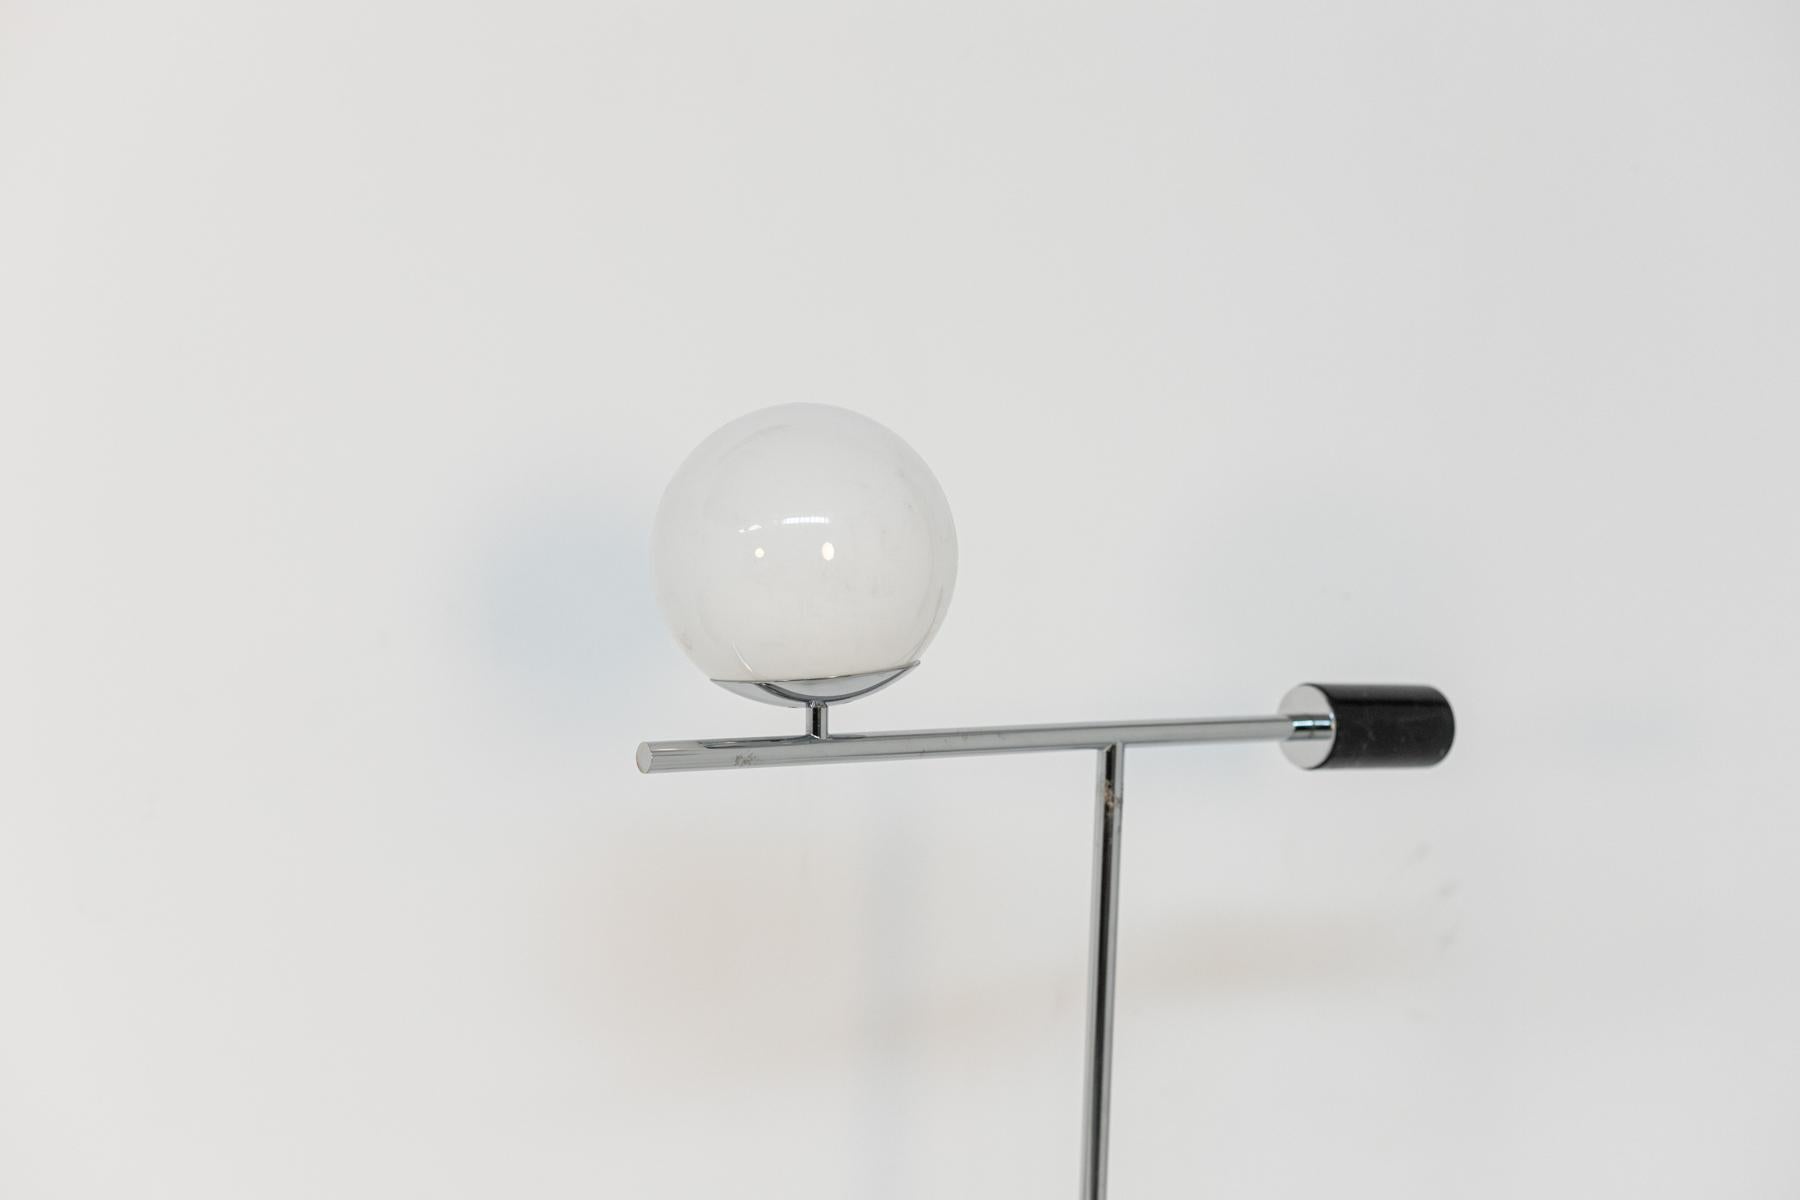 Lampadaire contemporain de fabrication italienne 2019 par Ltwid Luxury House.
La lampe, par ses formes sculpturales, crée un jeu géométrique à l'objet. Réalisée avec un corps central en marbre noir et une base en acier, la particularité de la lampe